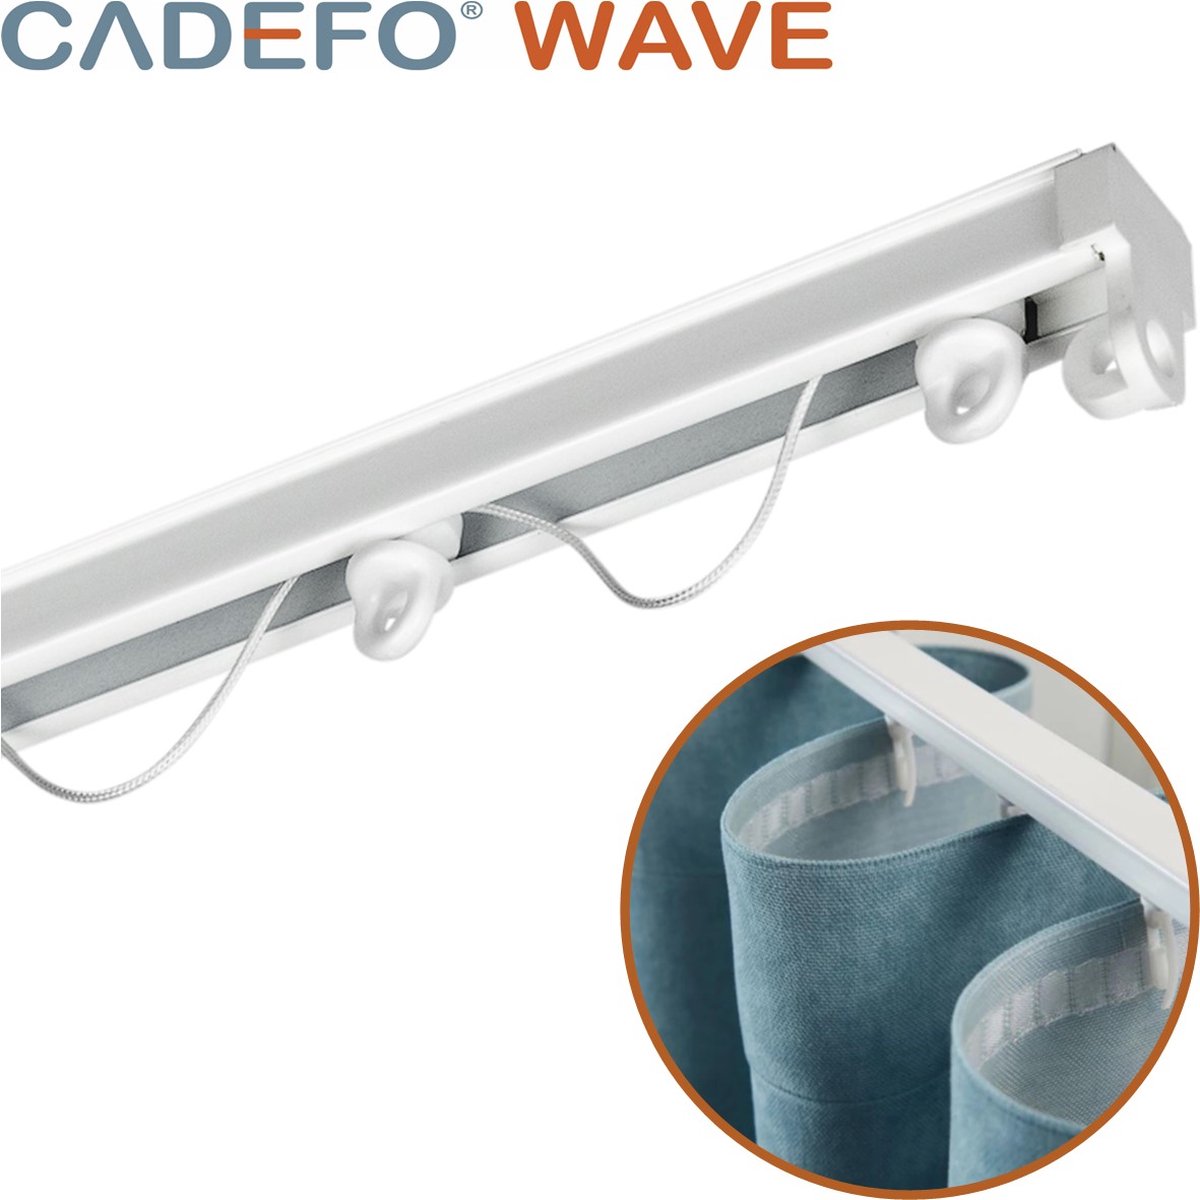 CADEFO WAVE (351 - 400 cm) Gordijnrails - Compleet op maat! - UIT 1 STUK - Leverbaar tot 6 meter - Plafondbevestiging - Lengte 381 cm